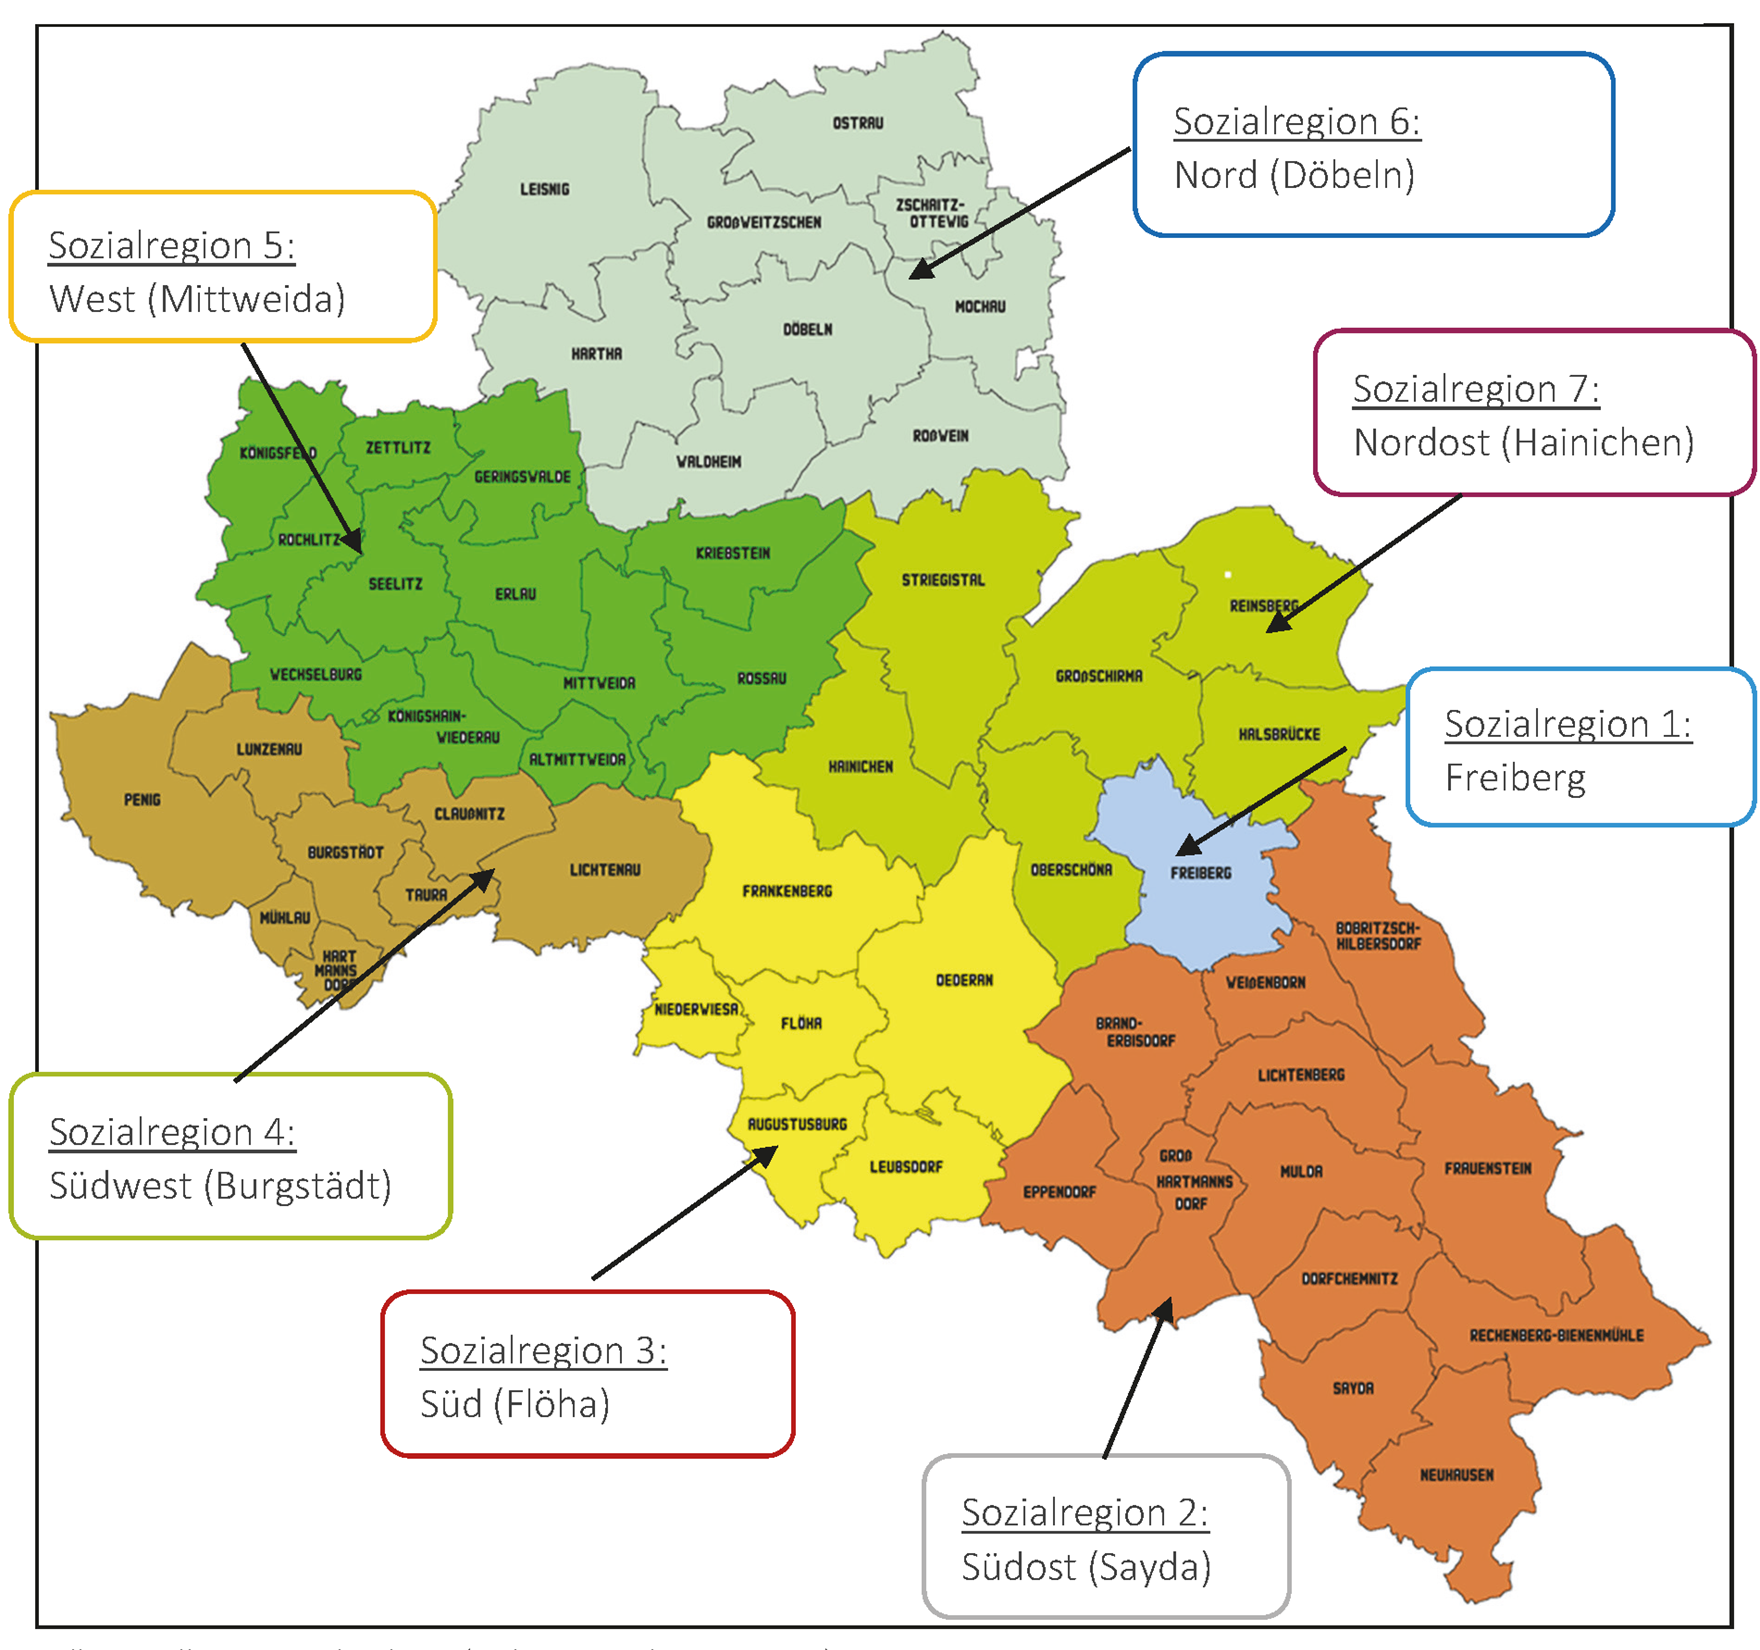 Die Abbildung zeigt die sieben Sozialregionen farblich abgegrenzt in Form einer Landkarte.